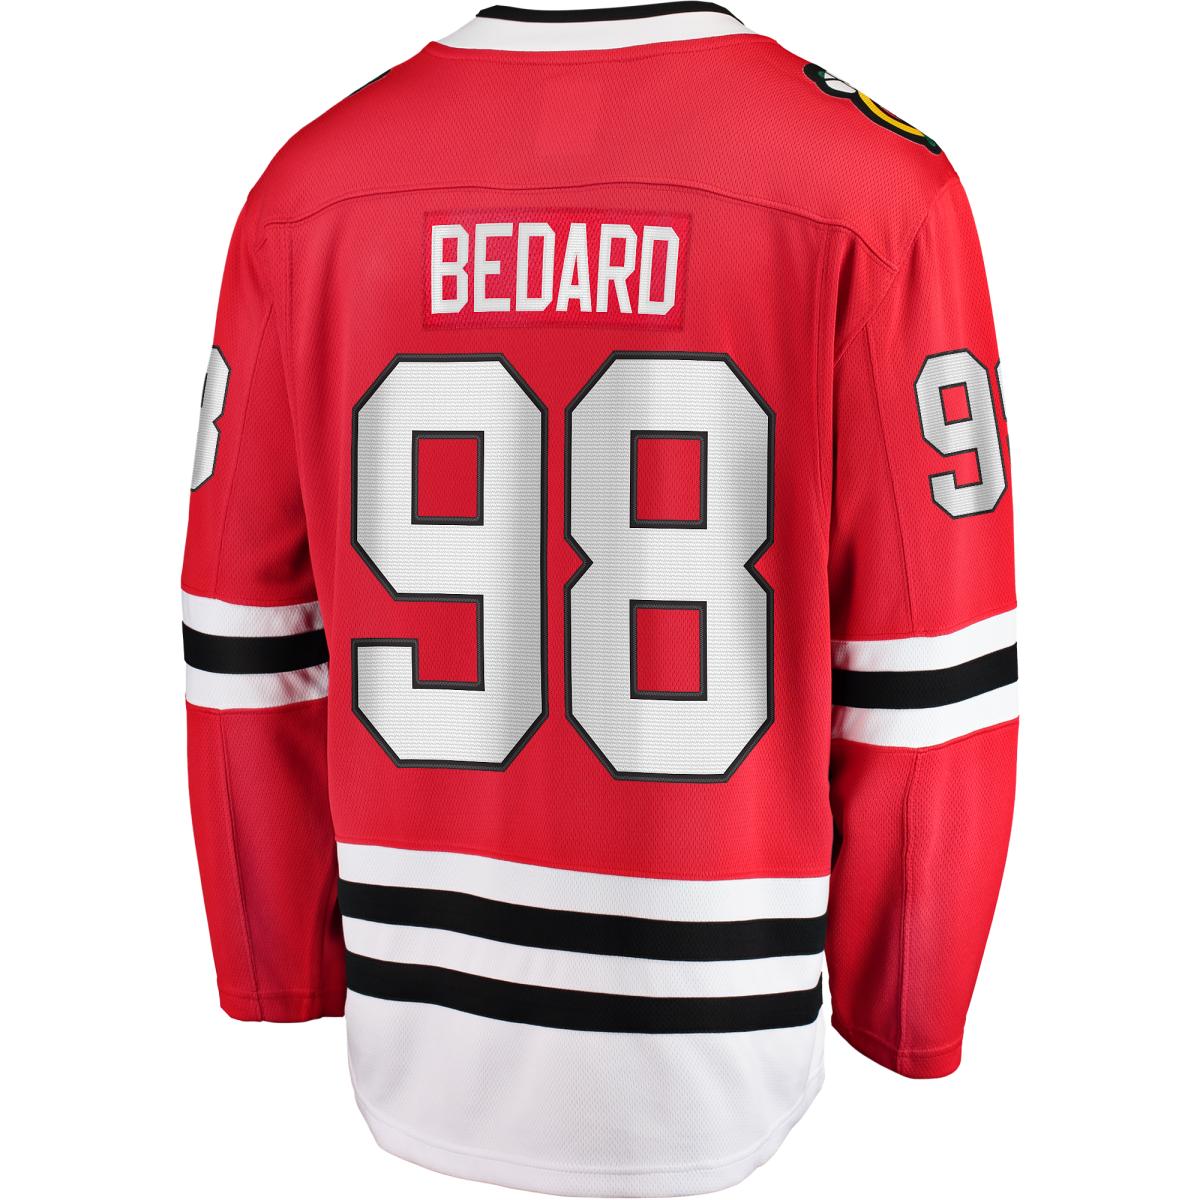 Connor Bedard Men's Blackhawks Jersey - $174.99